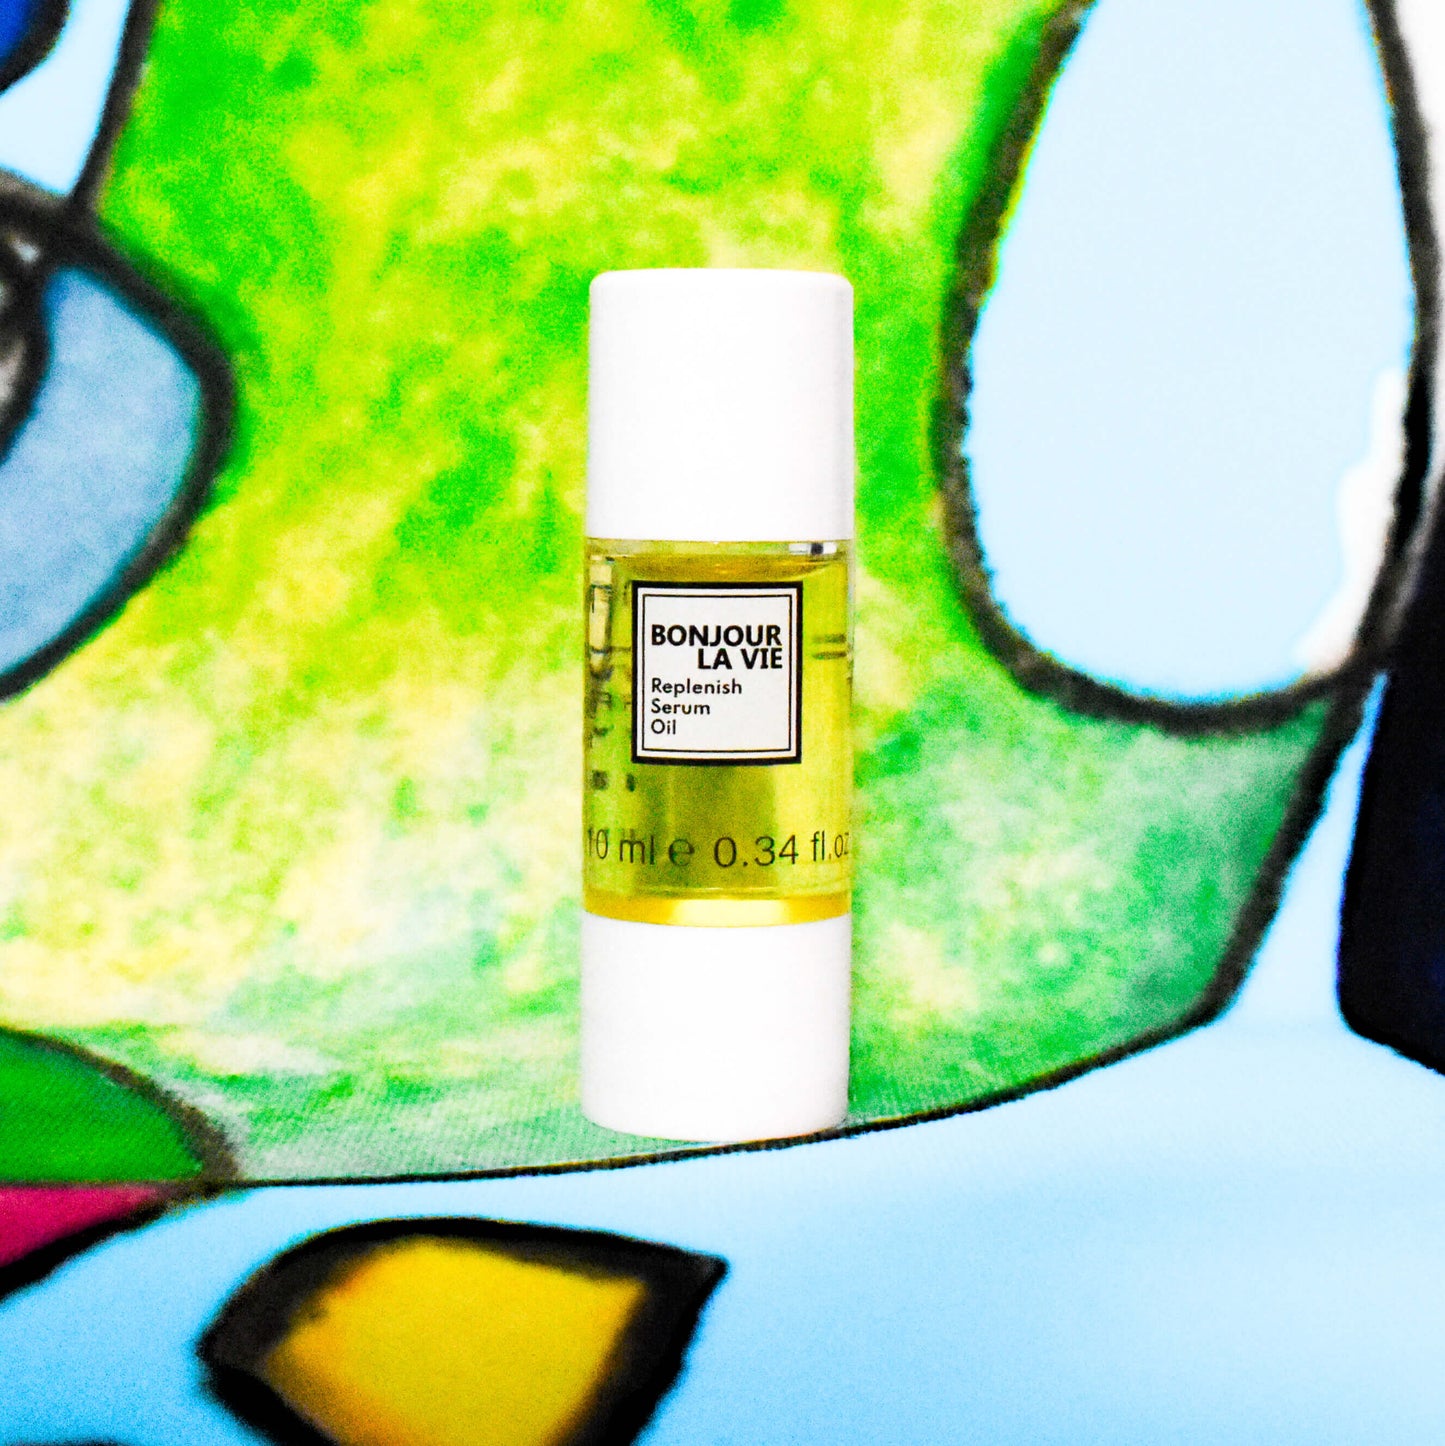 Immagine del flacone di replenish serum oil con un particolare della tela dalla tela dalla quale è stato tratto il packaging sullo sfondo